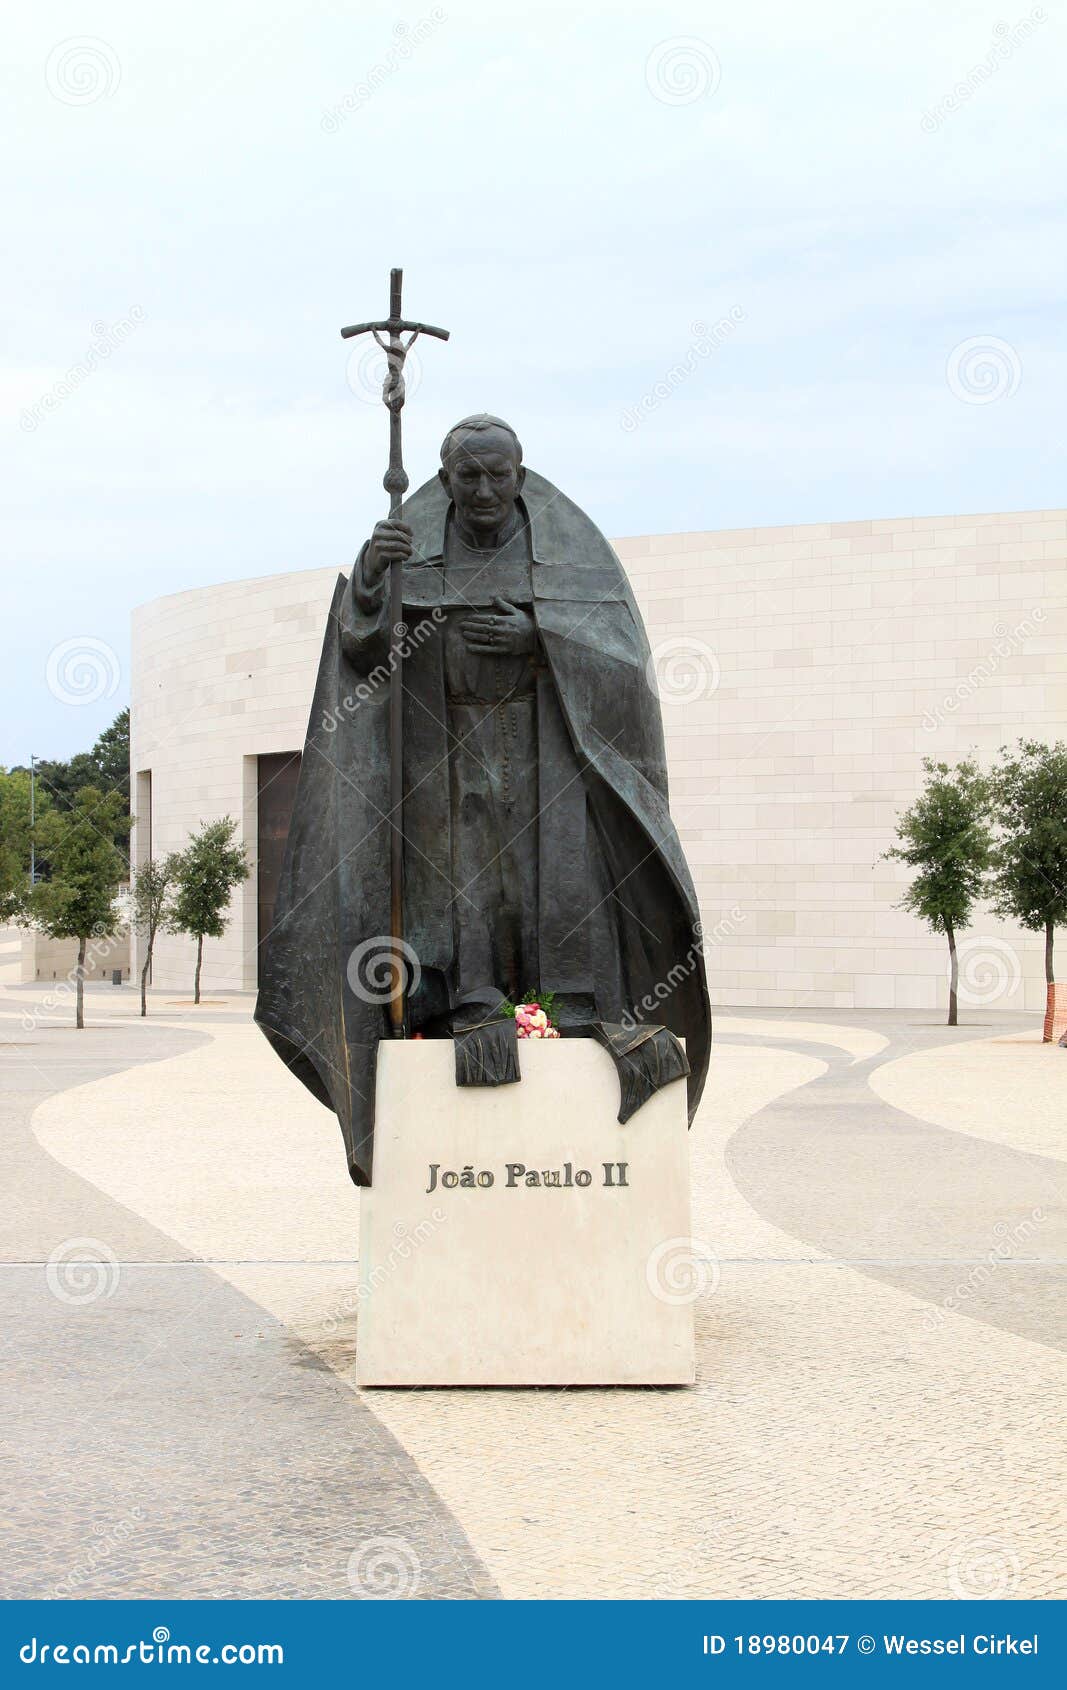 statue of pope john paul ii in fatima, portugal